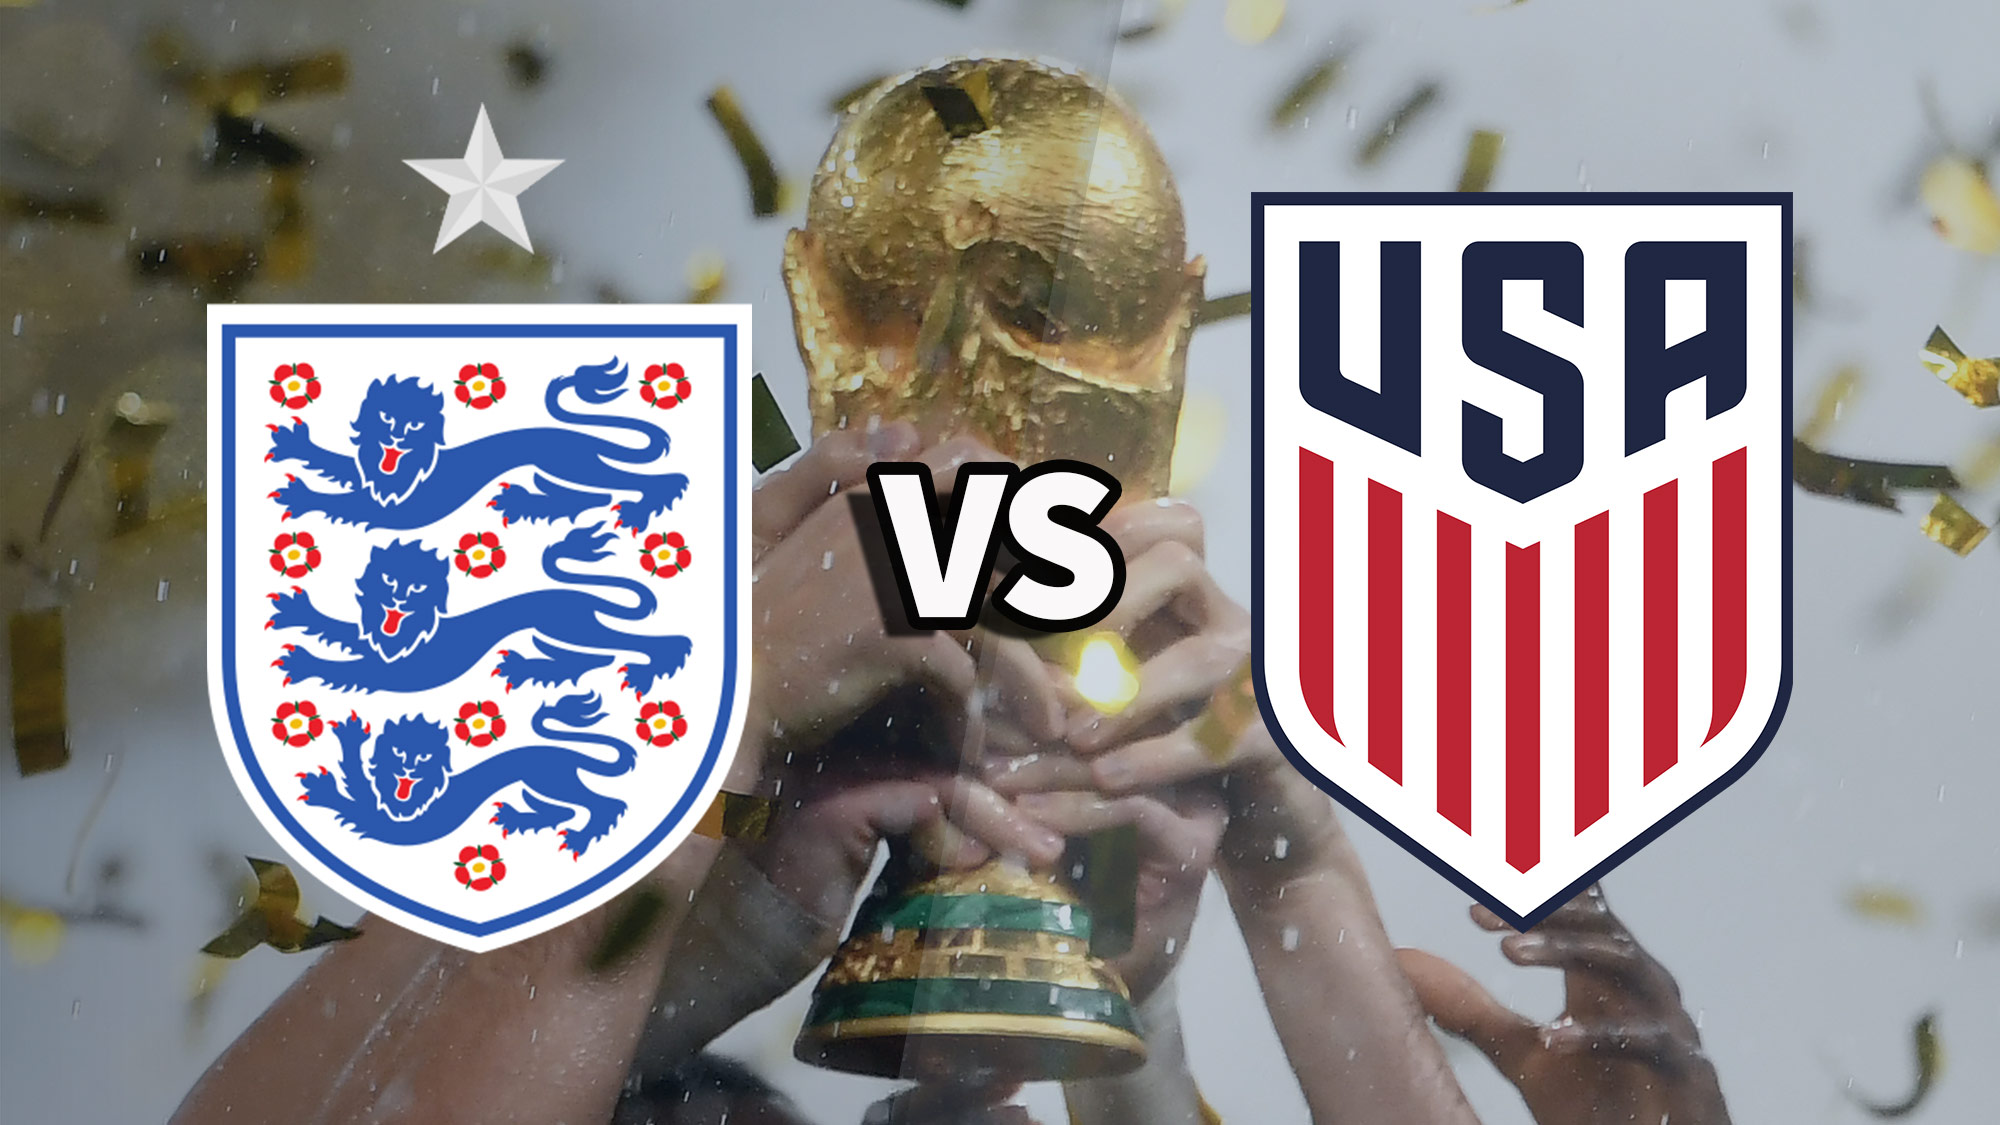 Значки сборных Англии и США по футболу поверх фотографии поднятого трофея чемпионата мира